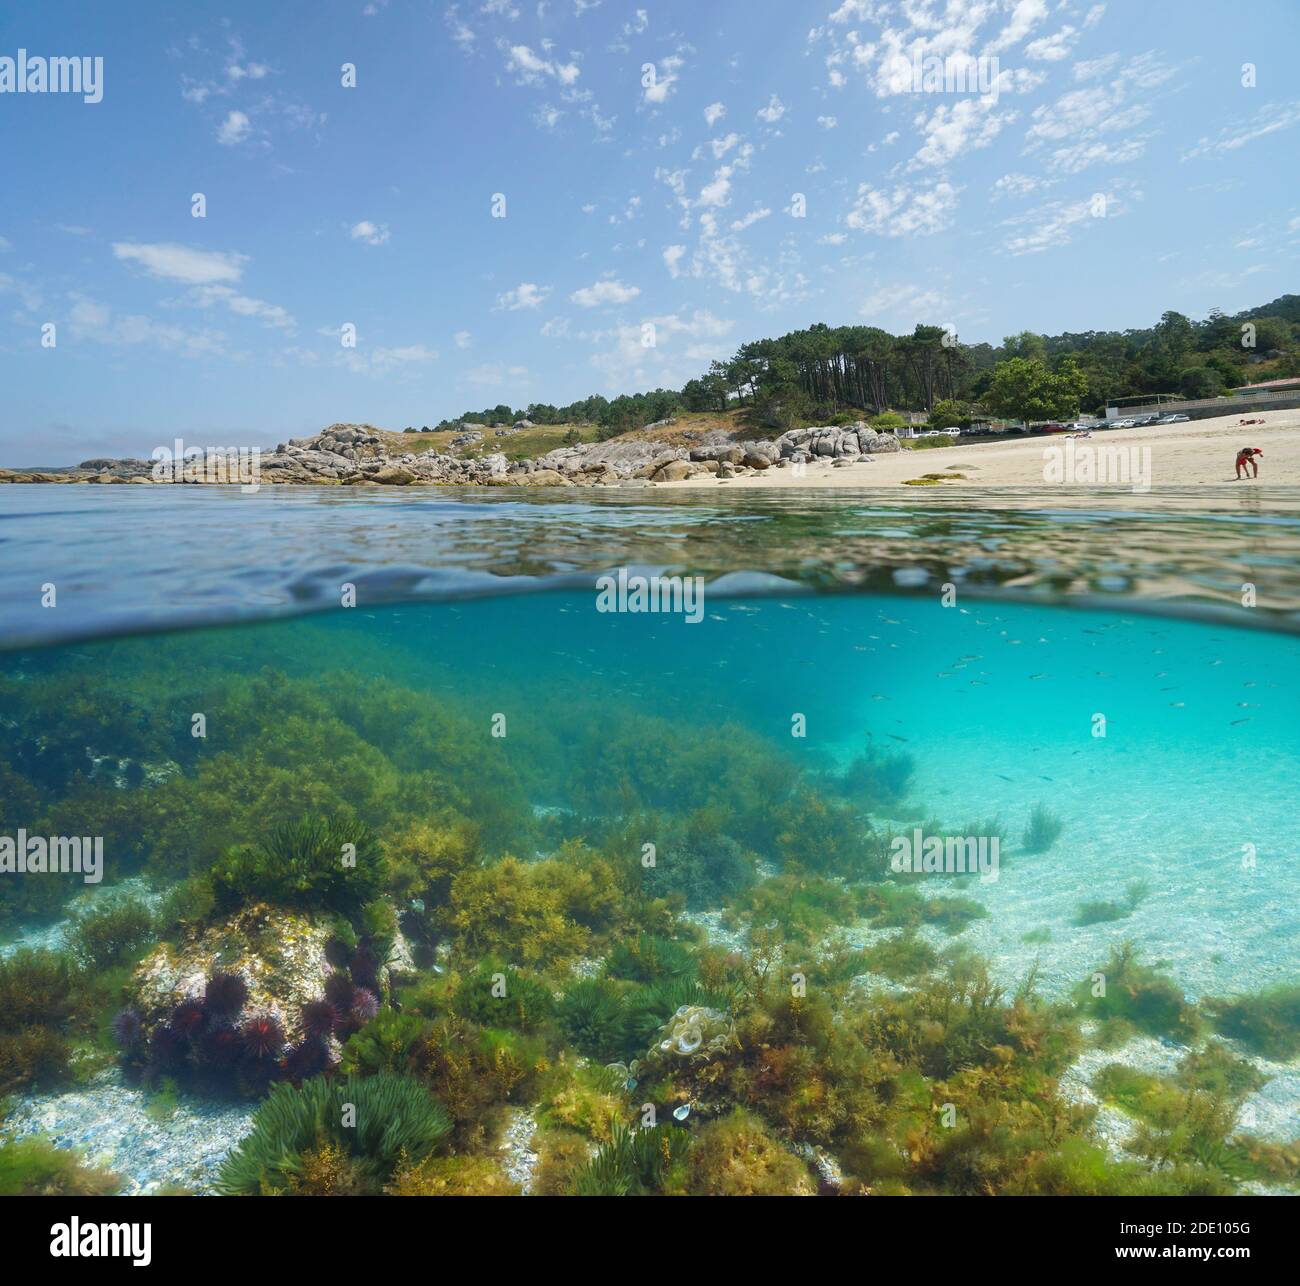 Spagna Galizia costa spiaggia, vista su e sotto la superficie dell'acqua, oceano Atlantico, Bueu, provincia di Pontevedra, Praia de Lagos Foto Stock